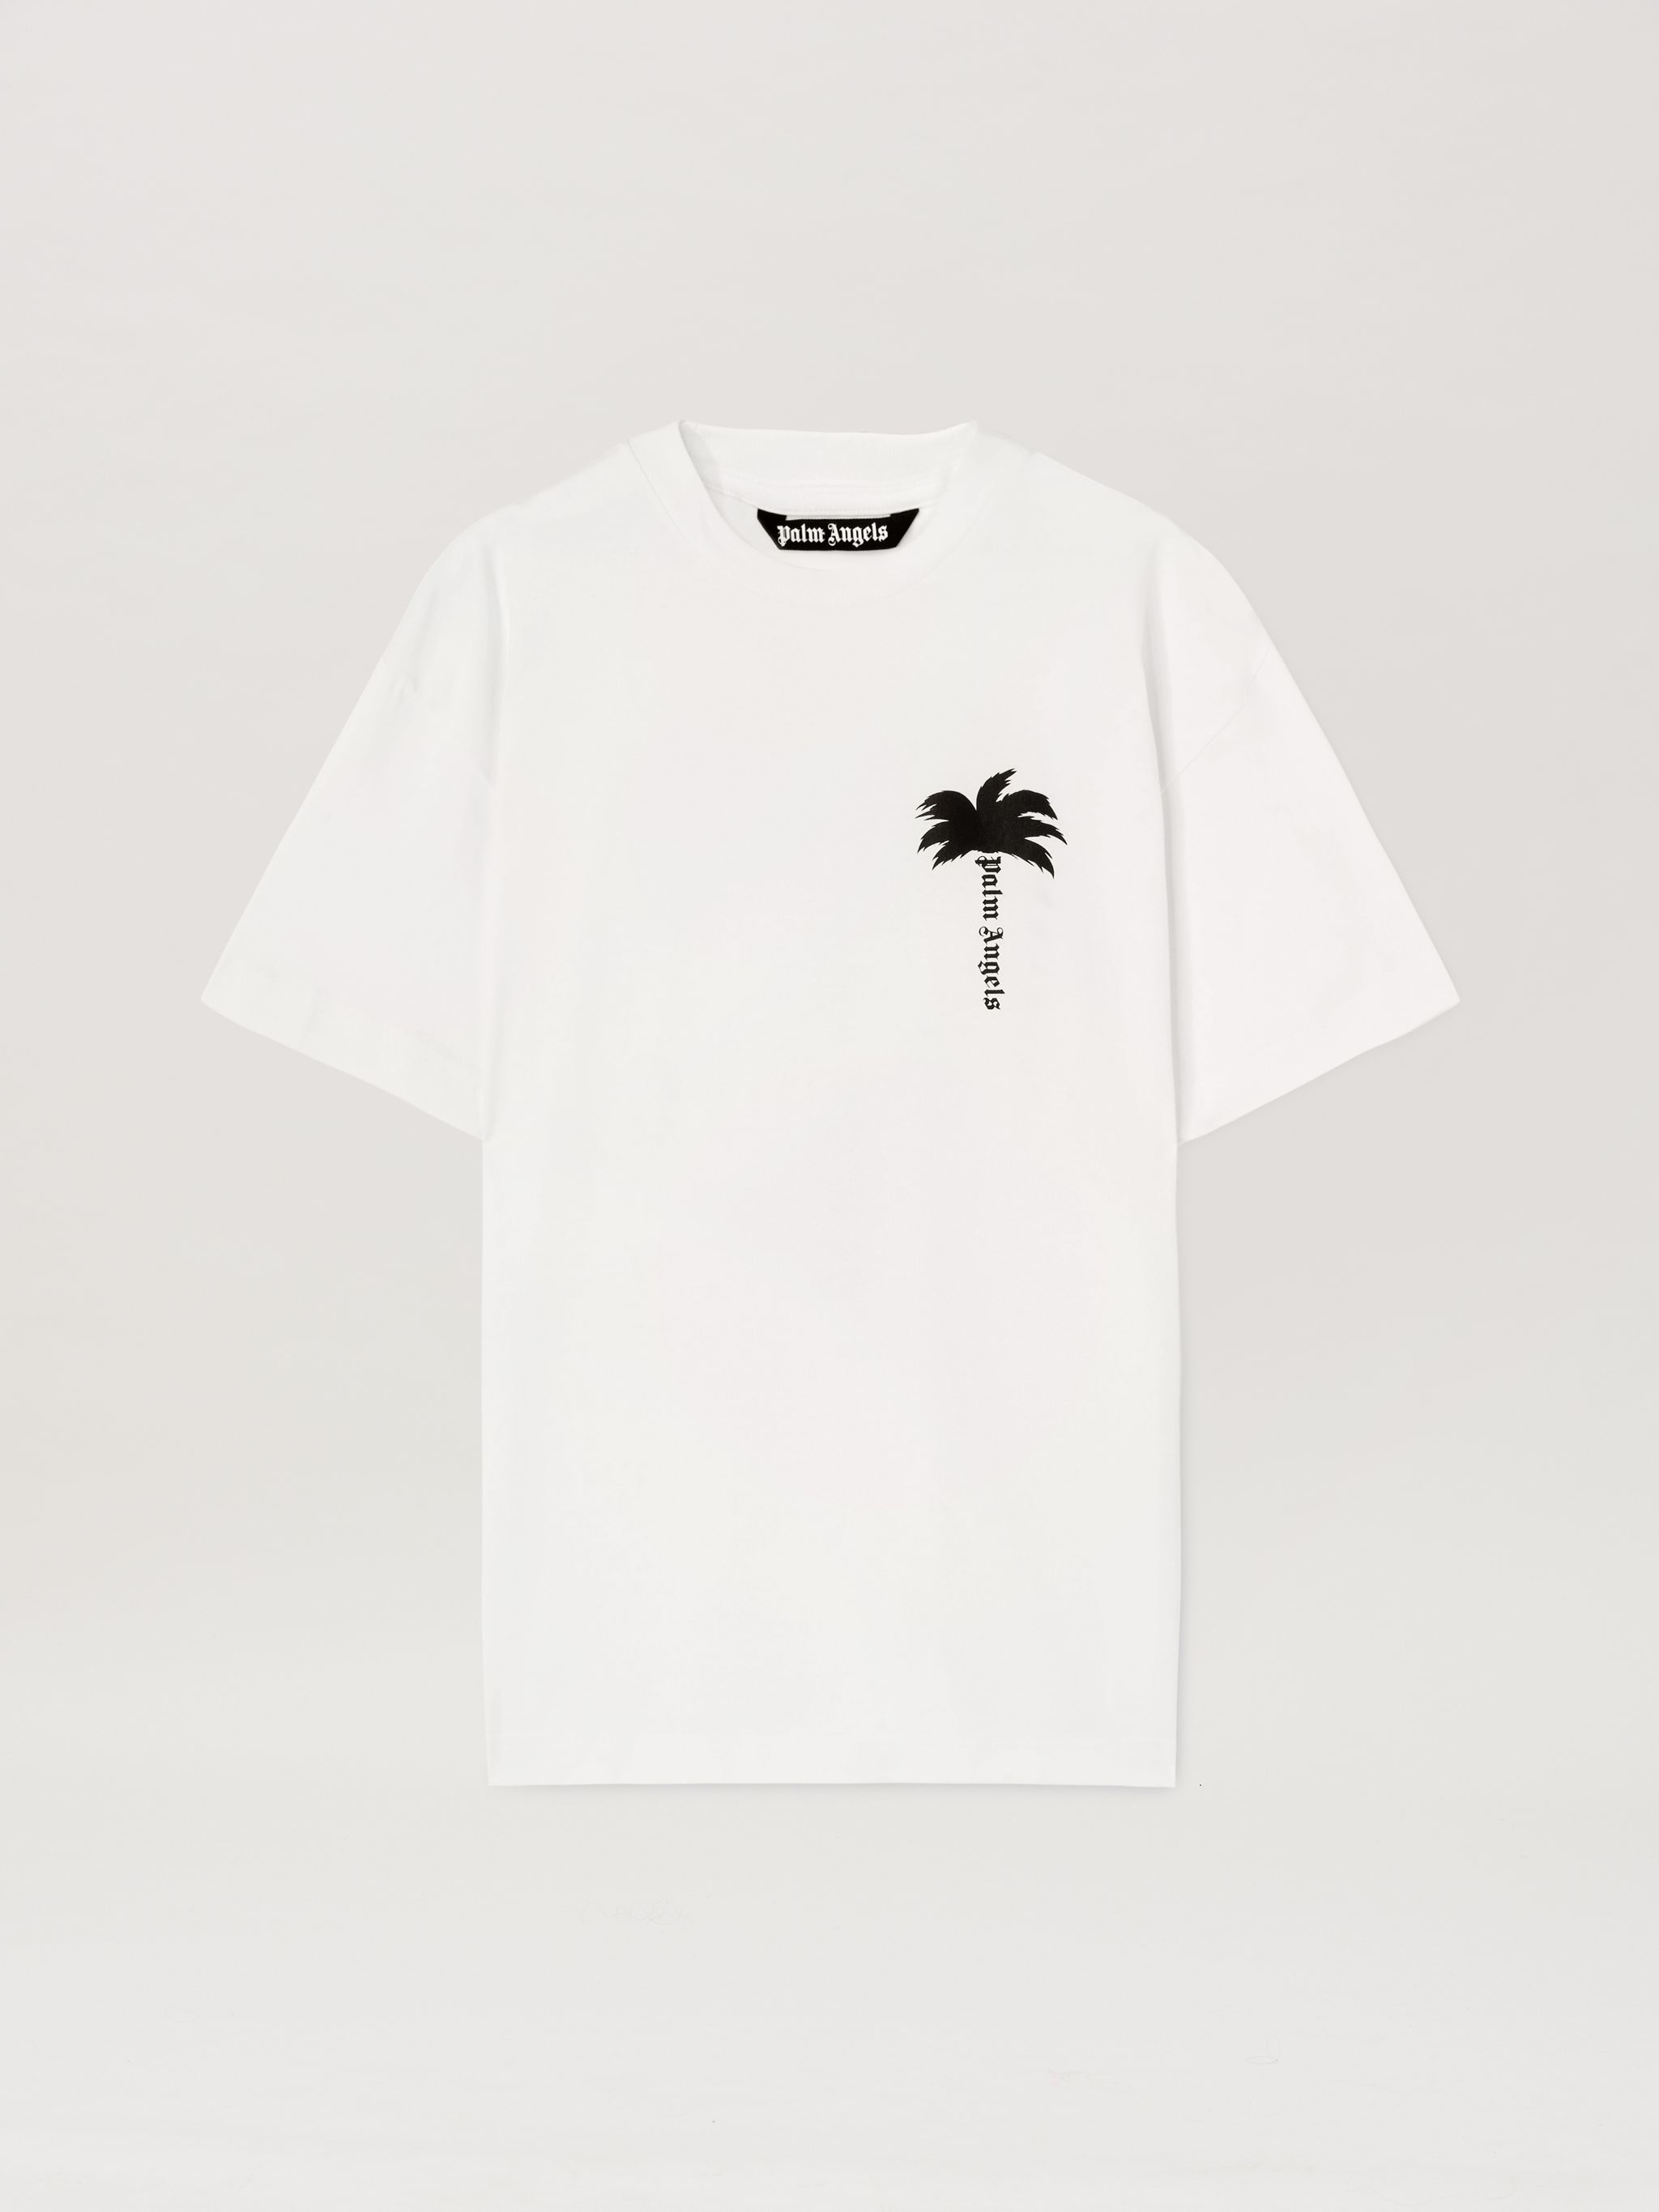 Weißes T-Shirt mit Palmenblätter